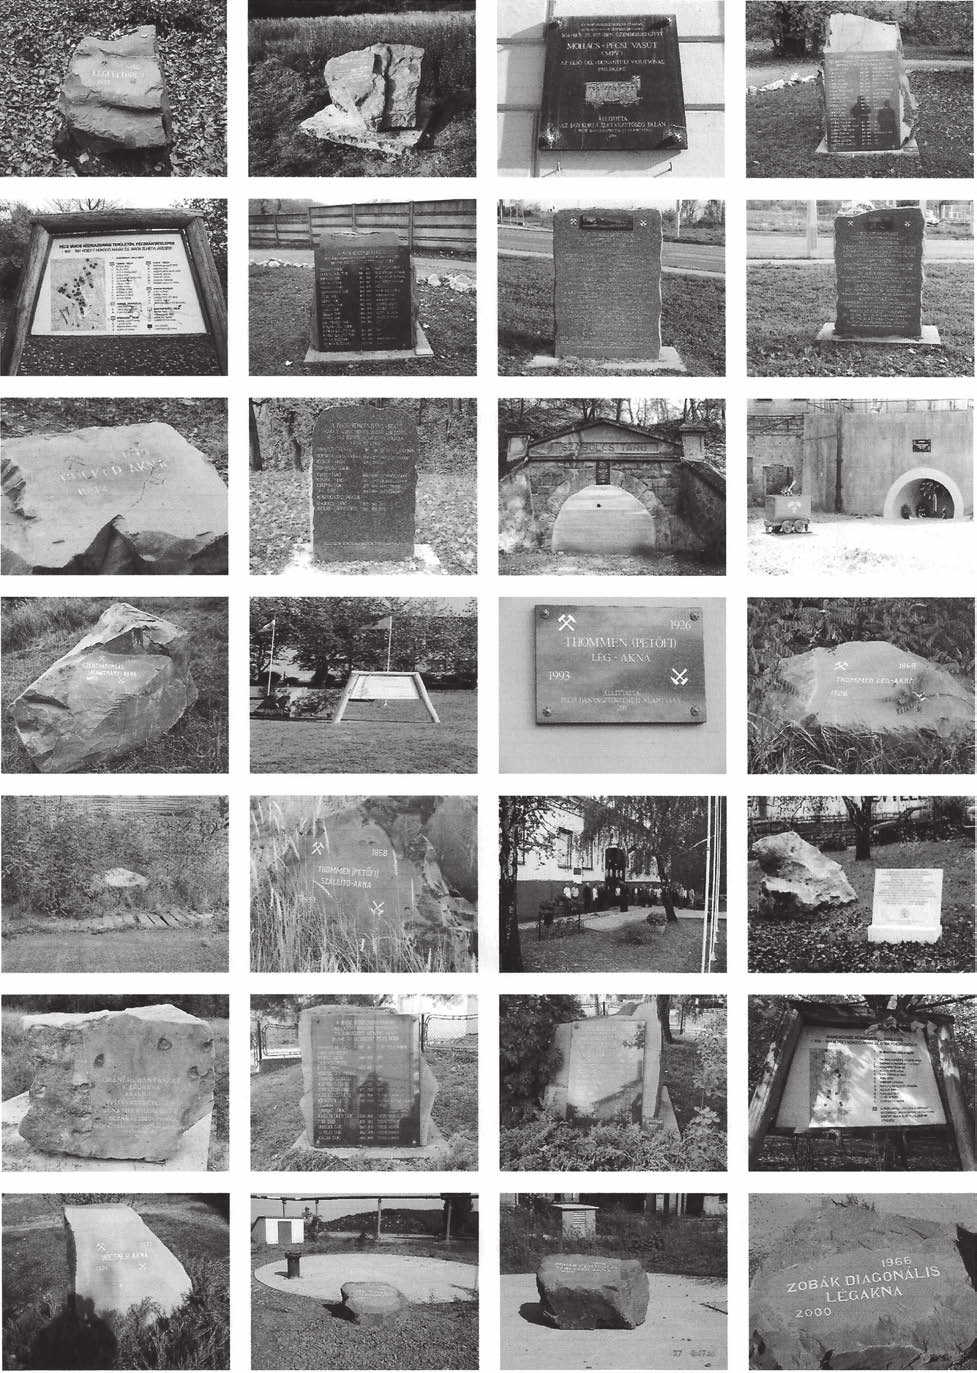 A pécsi kıszénbányászat területén elhelyezett emlékjelekrıl (emlékkövekrıl és -táblákról) részletesen Pálfy Attila: Emlékjel, emlékhely típusok